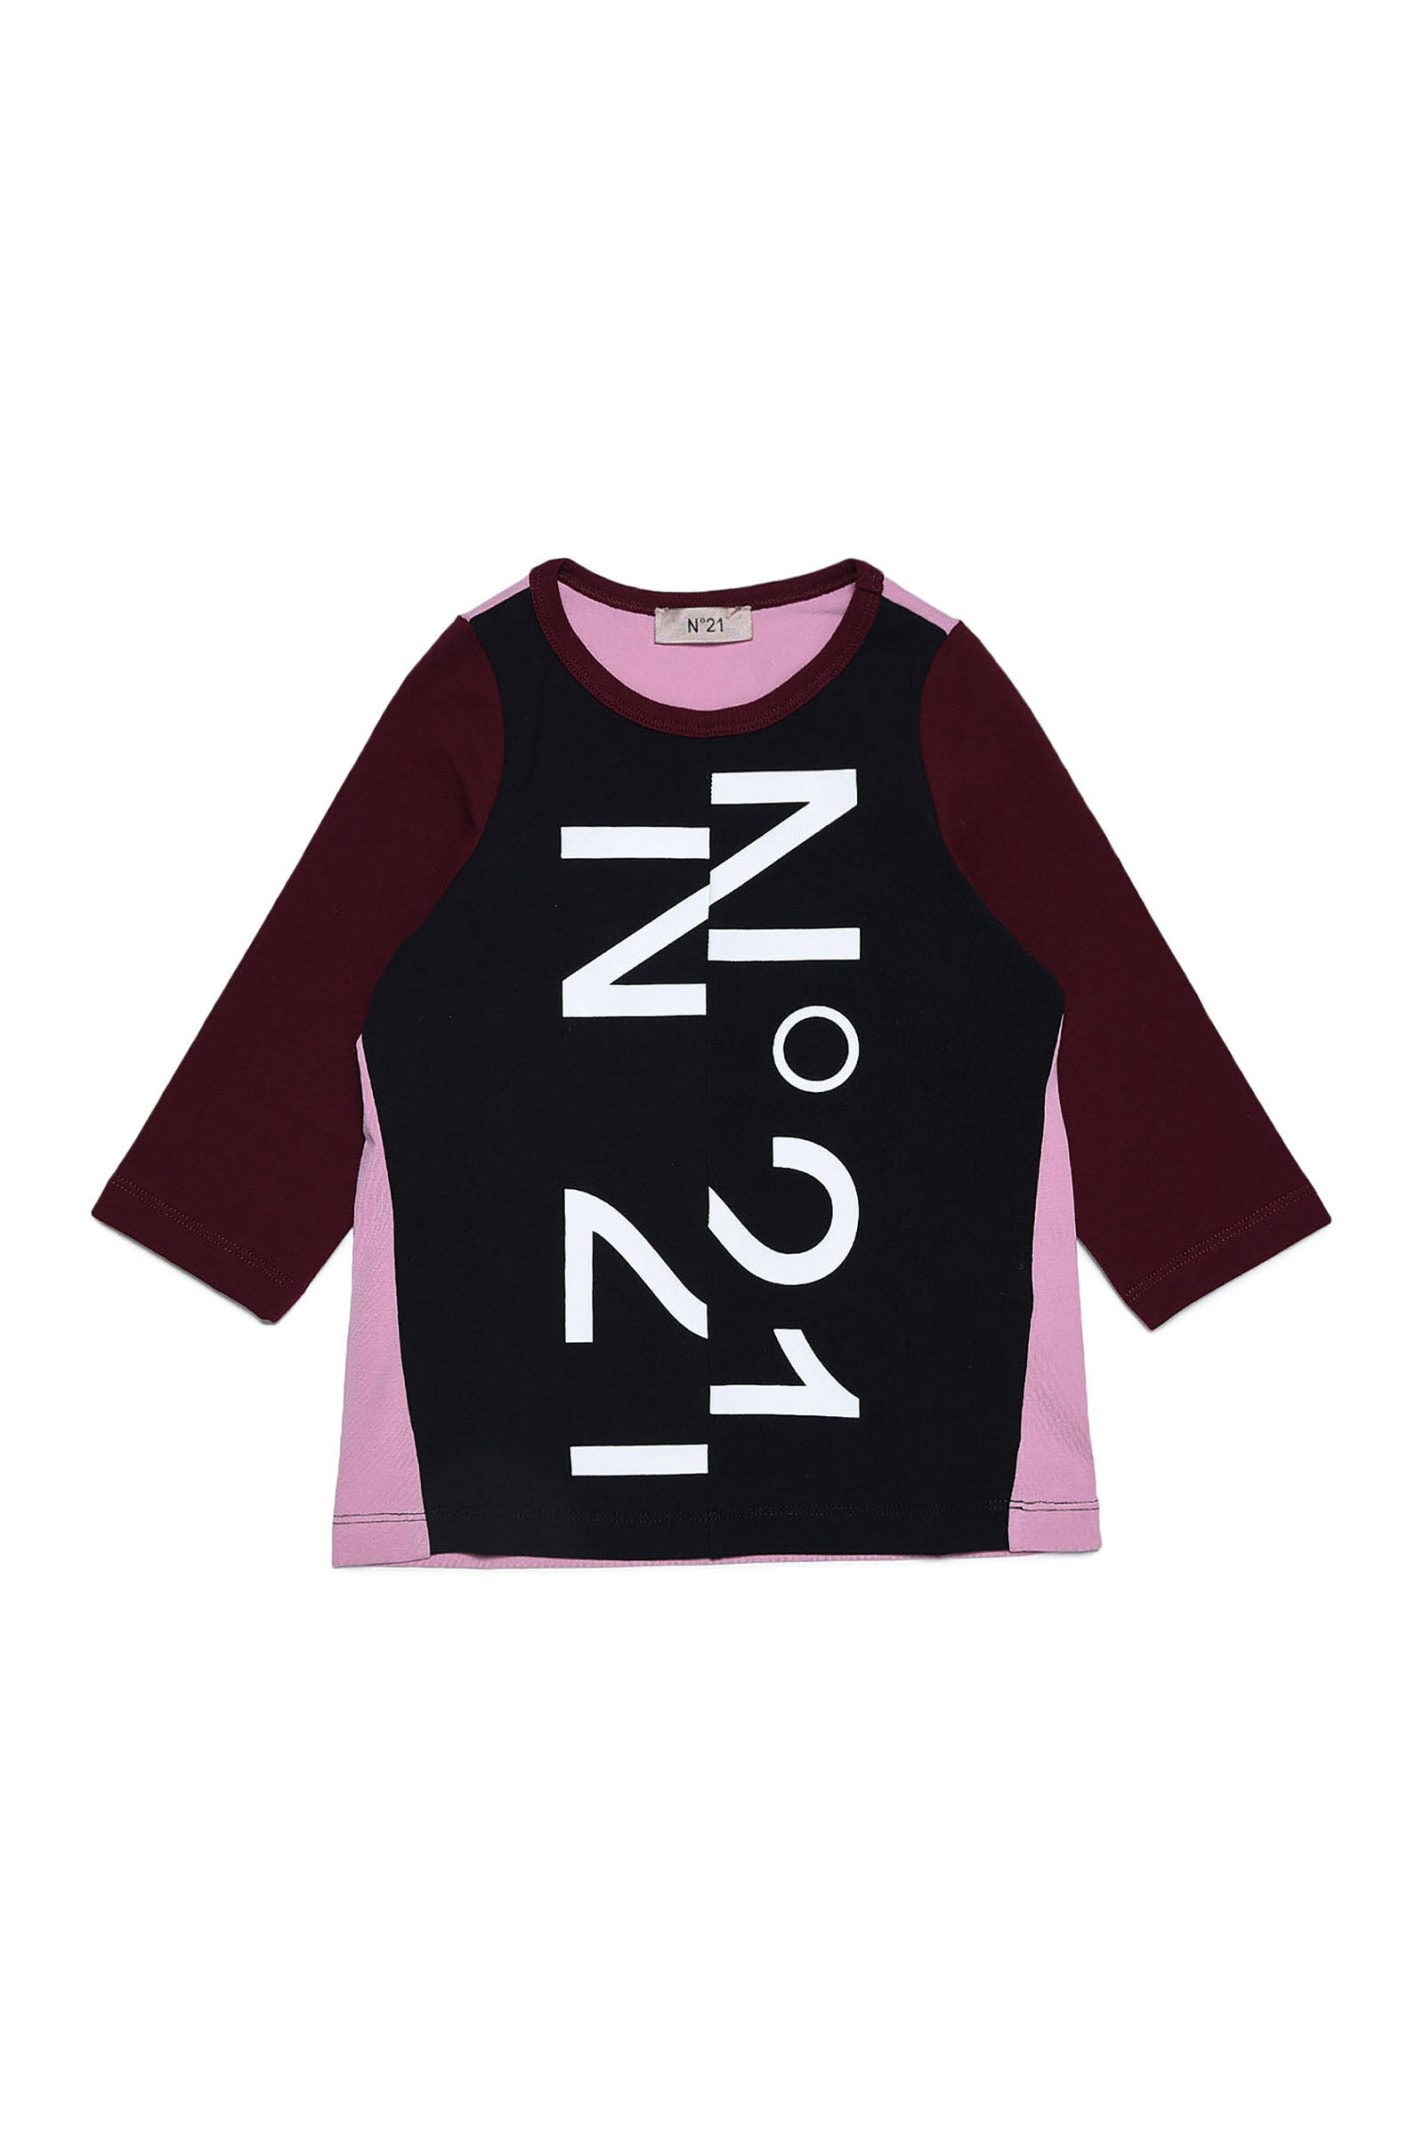 N.21 N21t149f T-shirt N°21